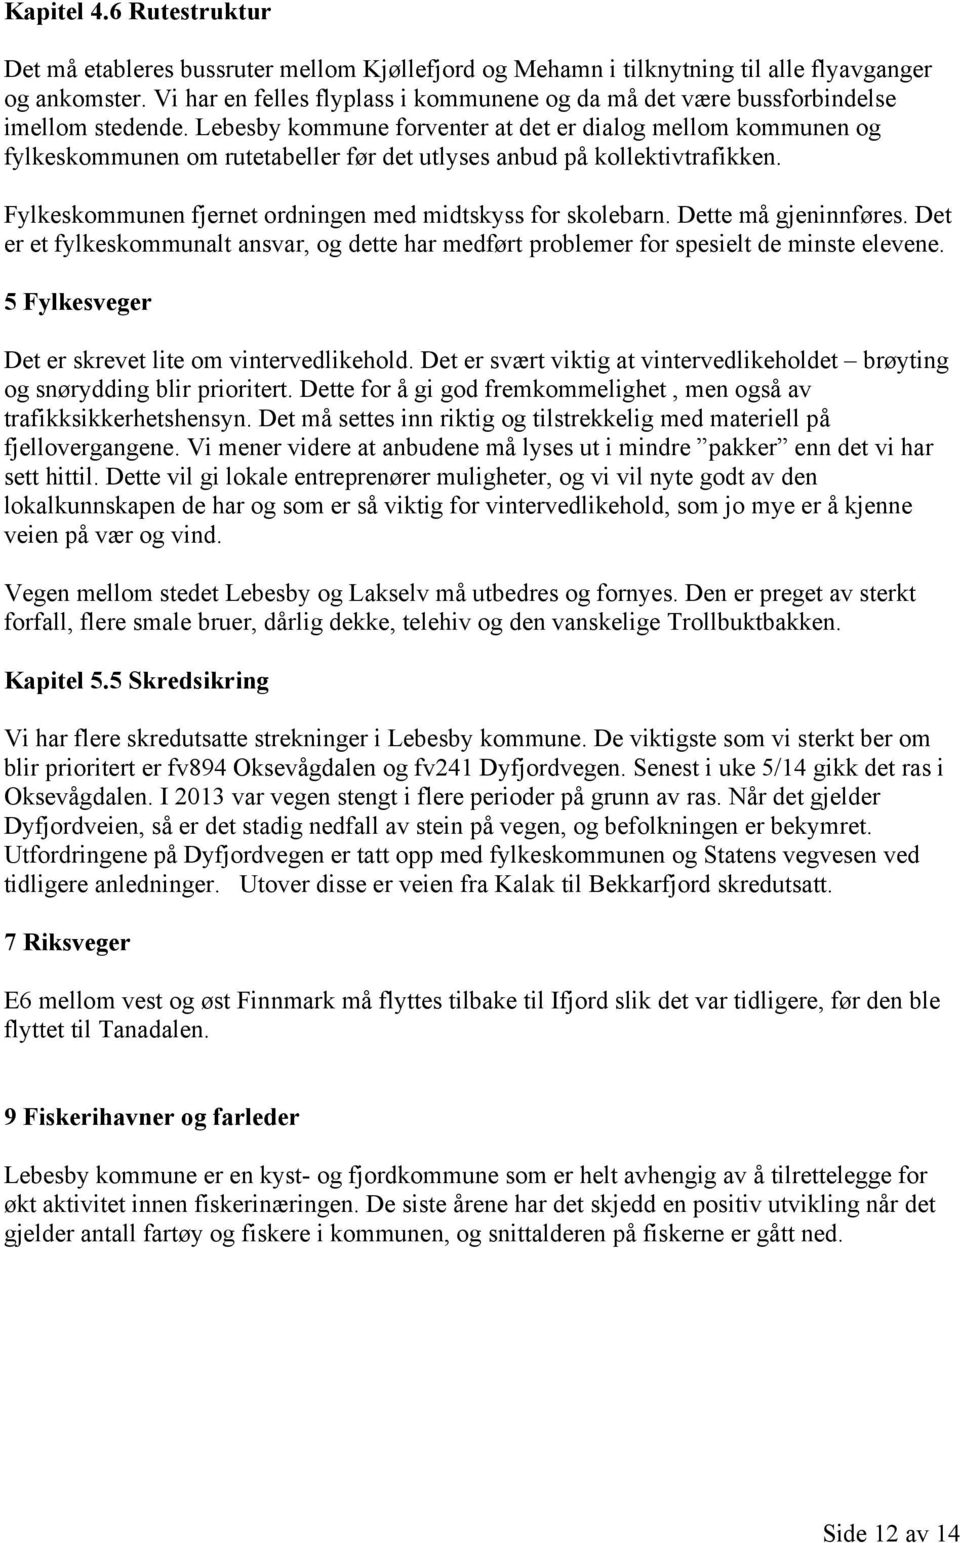 Lebesby kommune forventer at det er dialog mellom kommunen og fylkeskommunen om rutetabeller før det utlyses anbud på kollektivtrafikken. Fylkeskommunen fjernet ordningen med midtskyss for skolebarn.